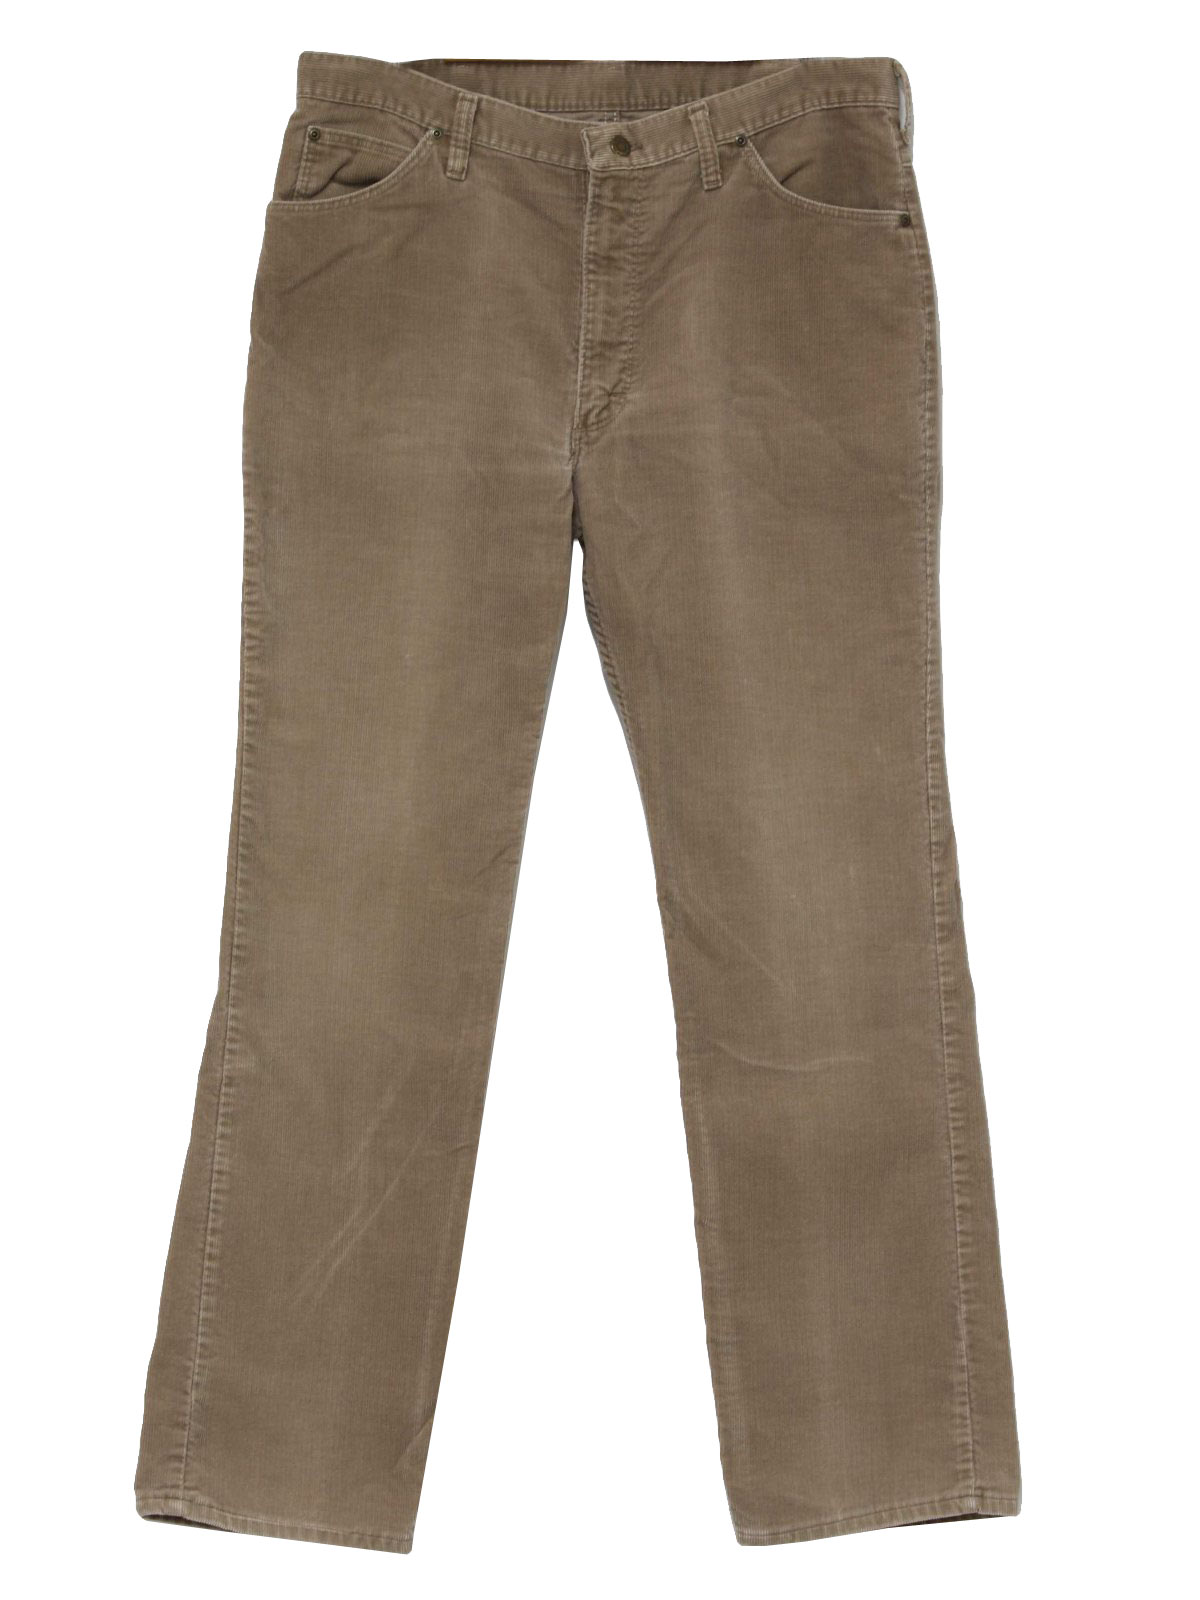 Wrangler 70's Vintage Pants: 70s -Wrangler- Mens light brown straight ...